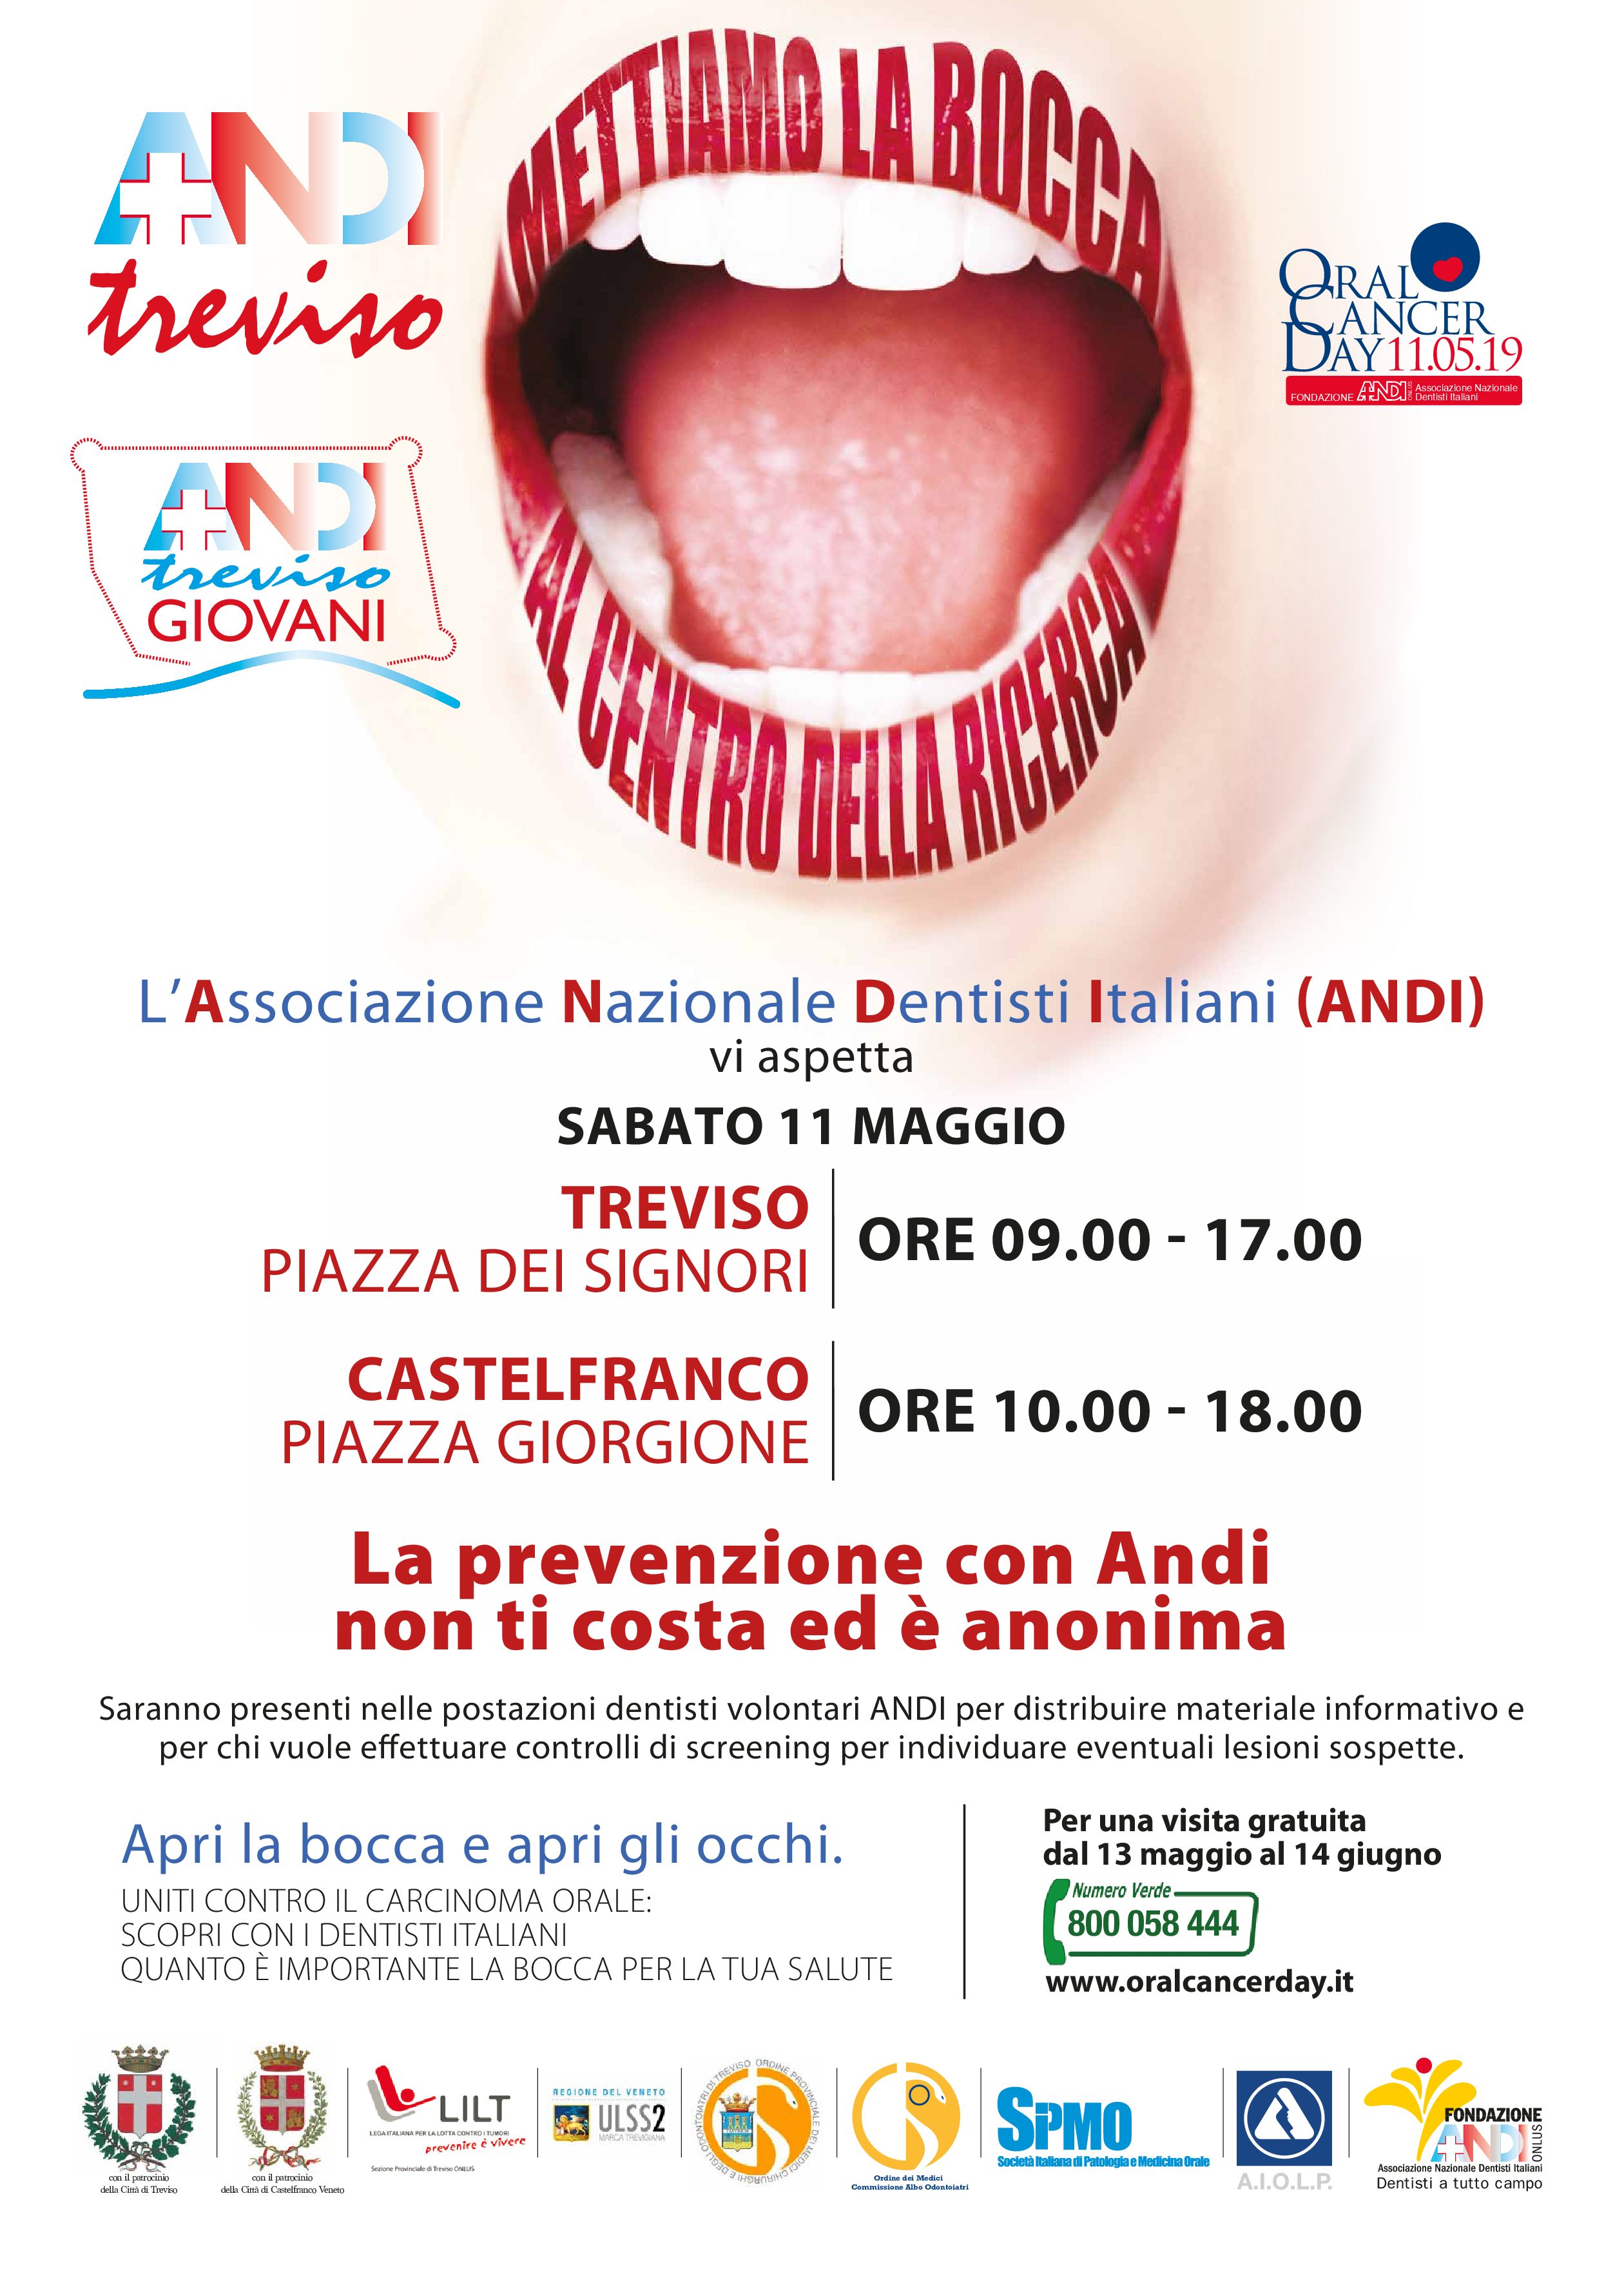 11.05.2019 Castelfranco Veneto e Treviso: Oral Cancer Day